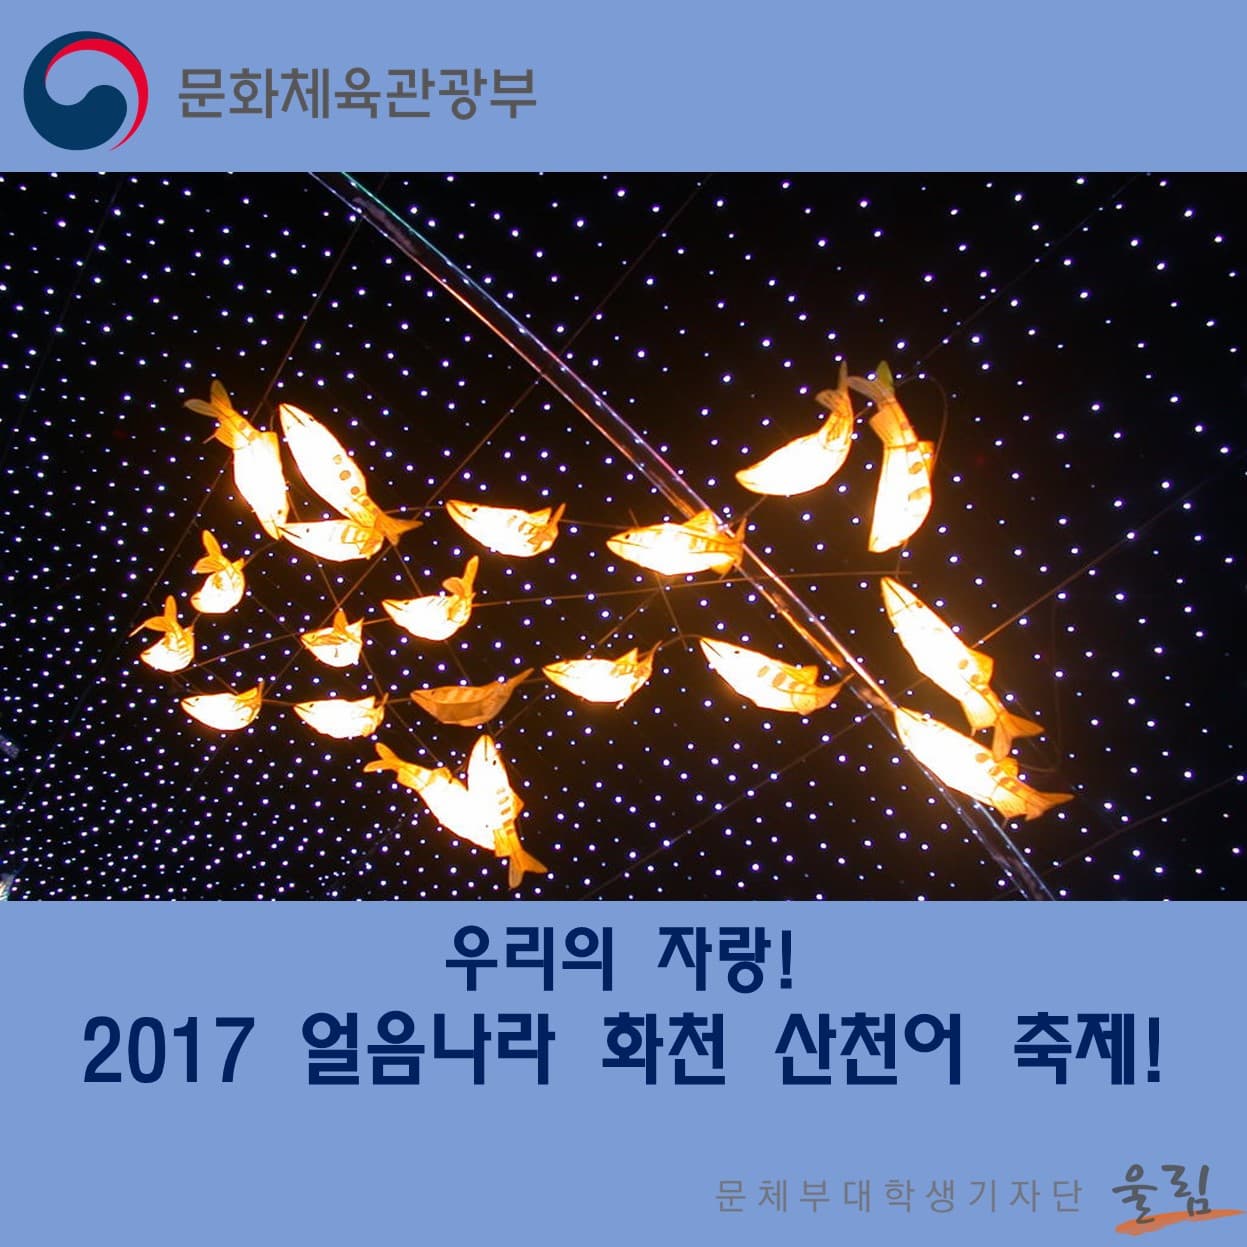 우리의 자랑!
2017 얼음나라 화천 산천어 축제!
문화체육관광부